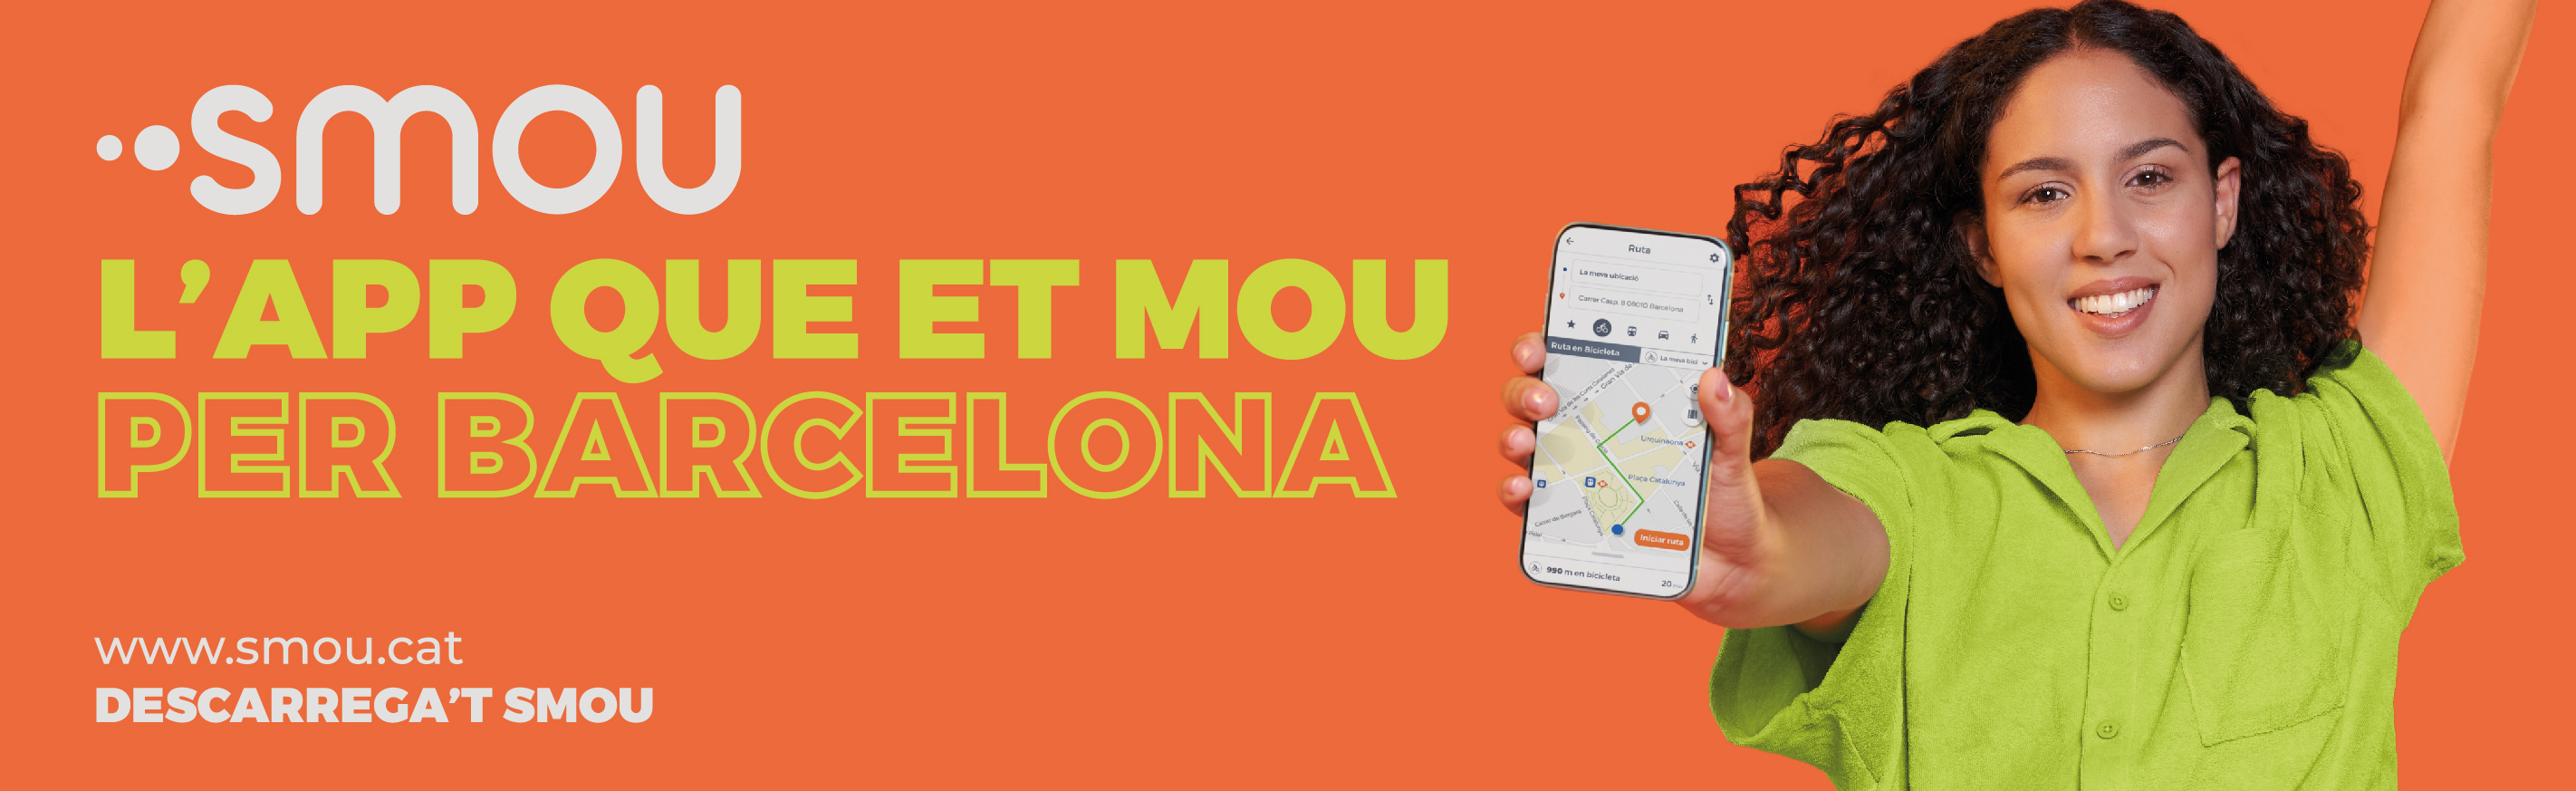 smou, l'app que et mou per Barcelona